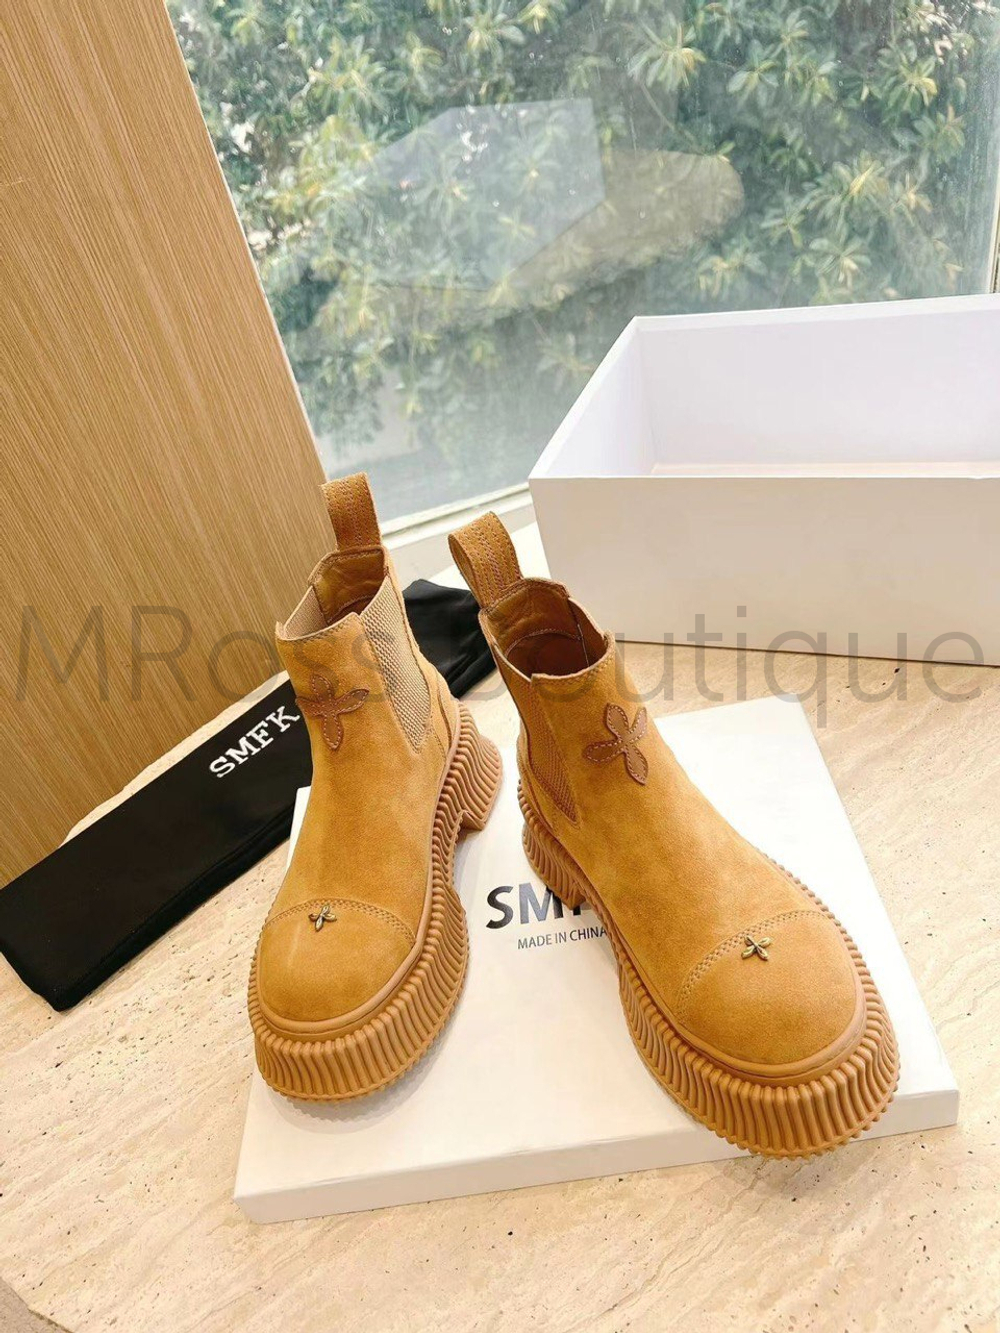 Женские ботинки челси песочного цвета SMFK Compass премиум класса